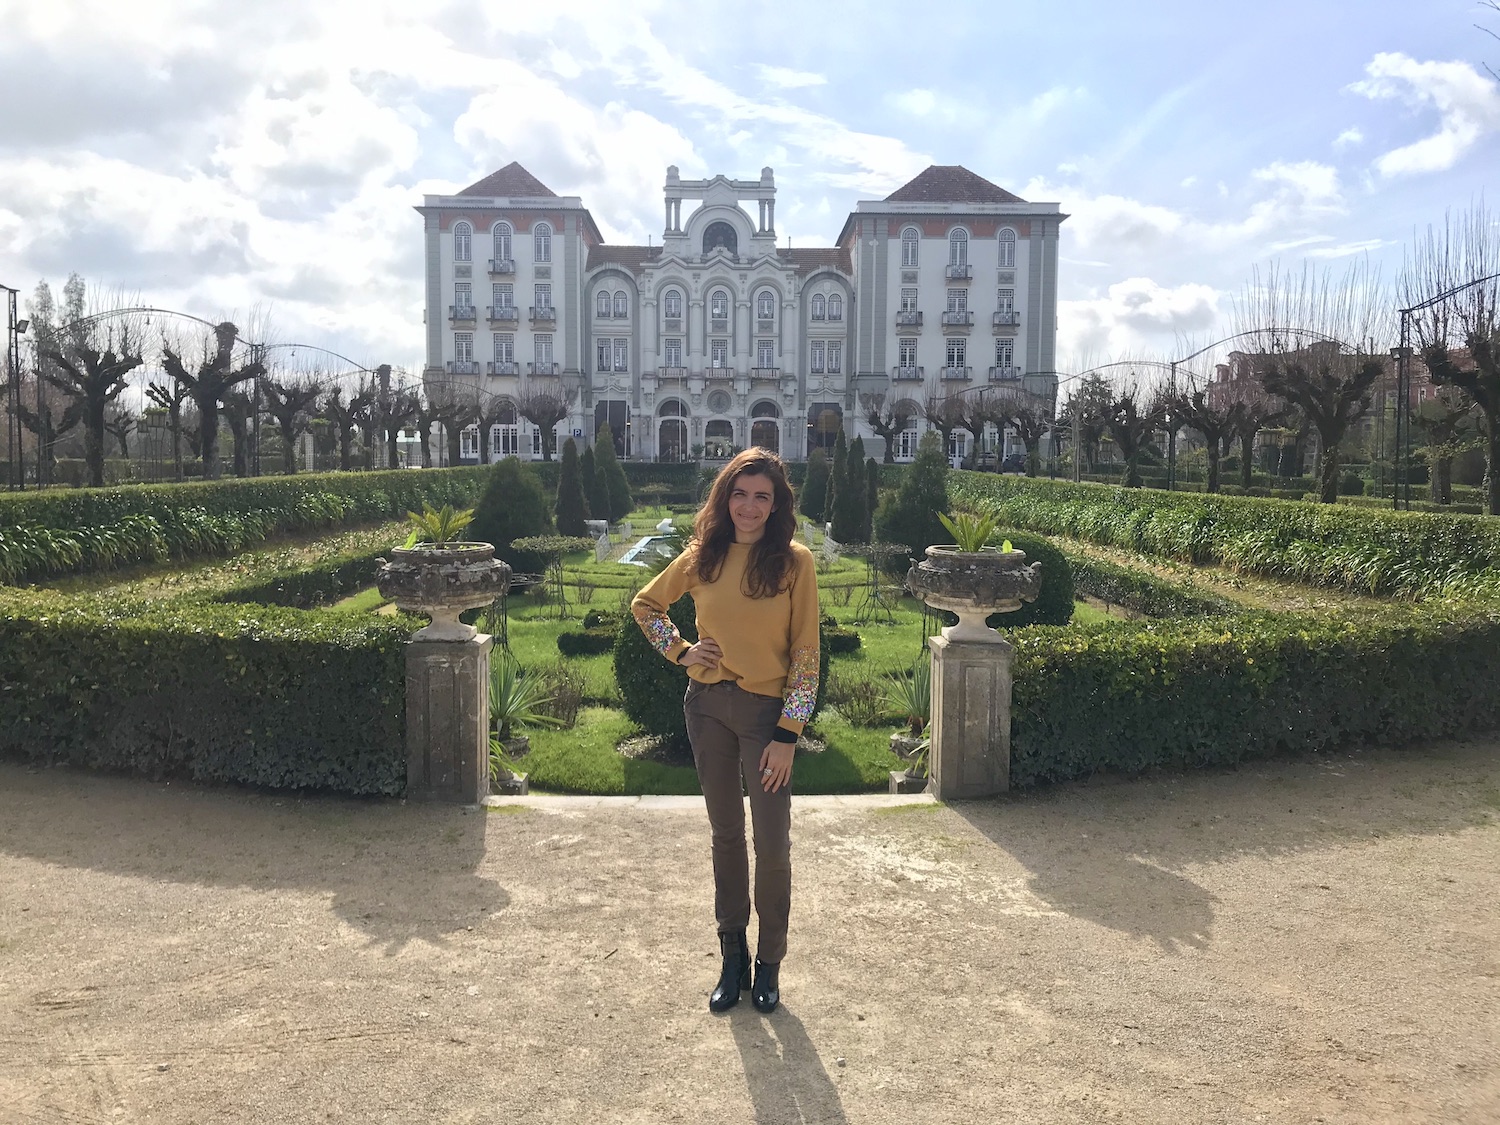 Curia Palace Hotel – uma preciosidade da hotelaria portuguesa